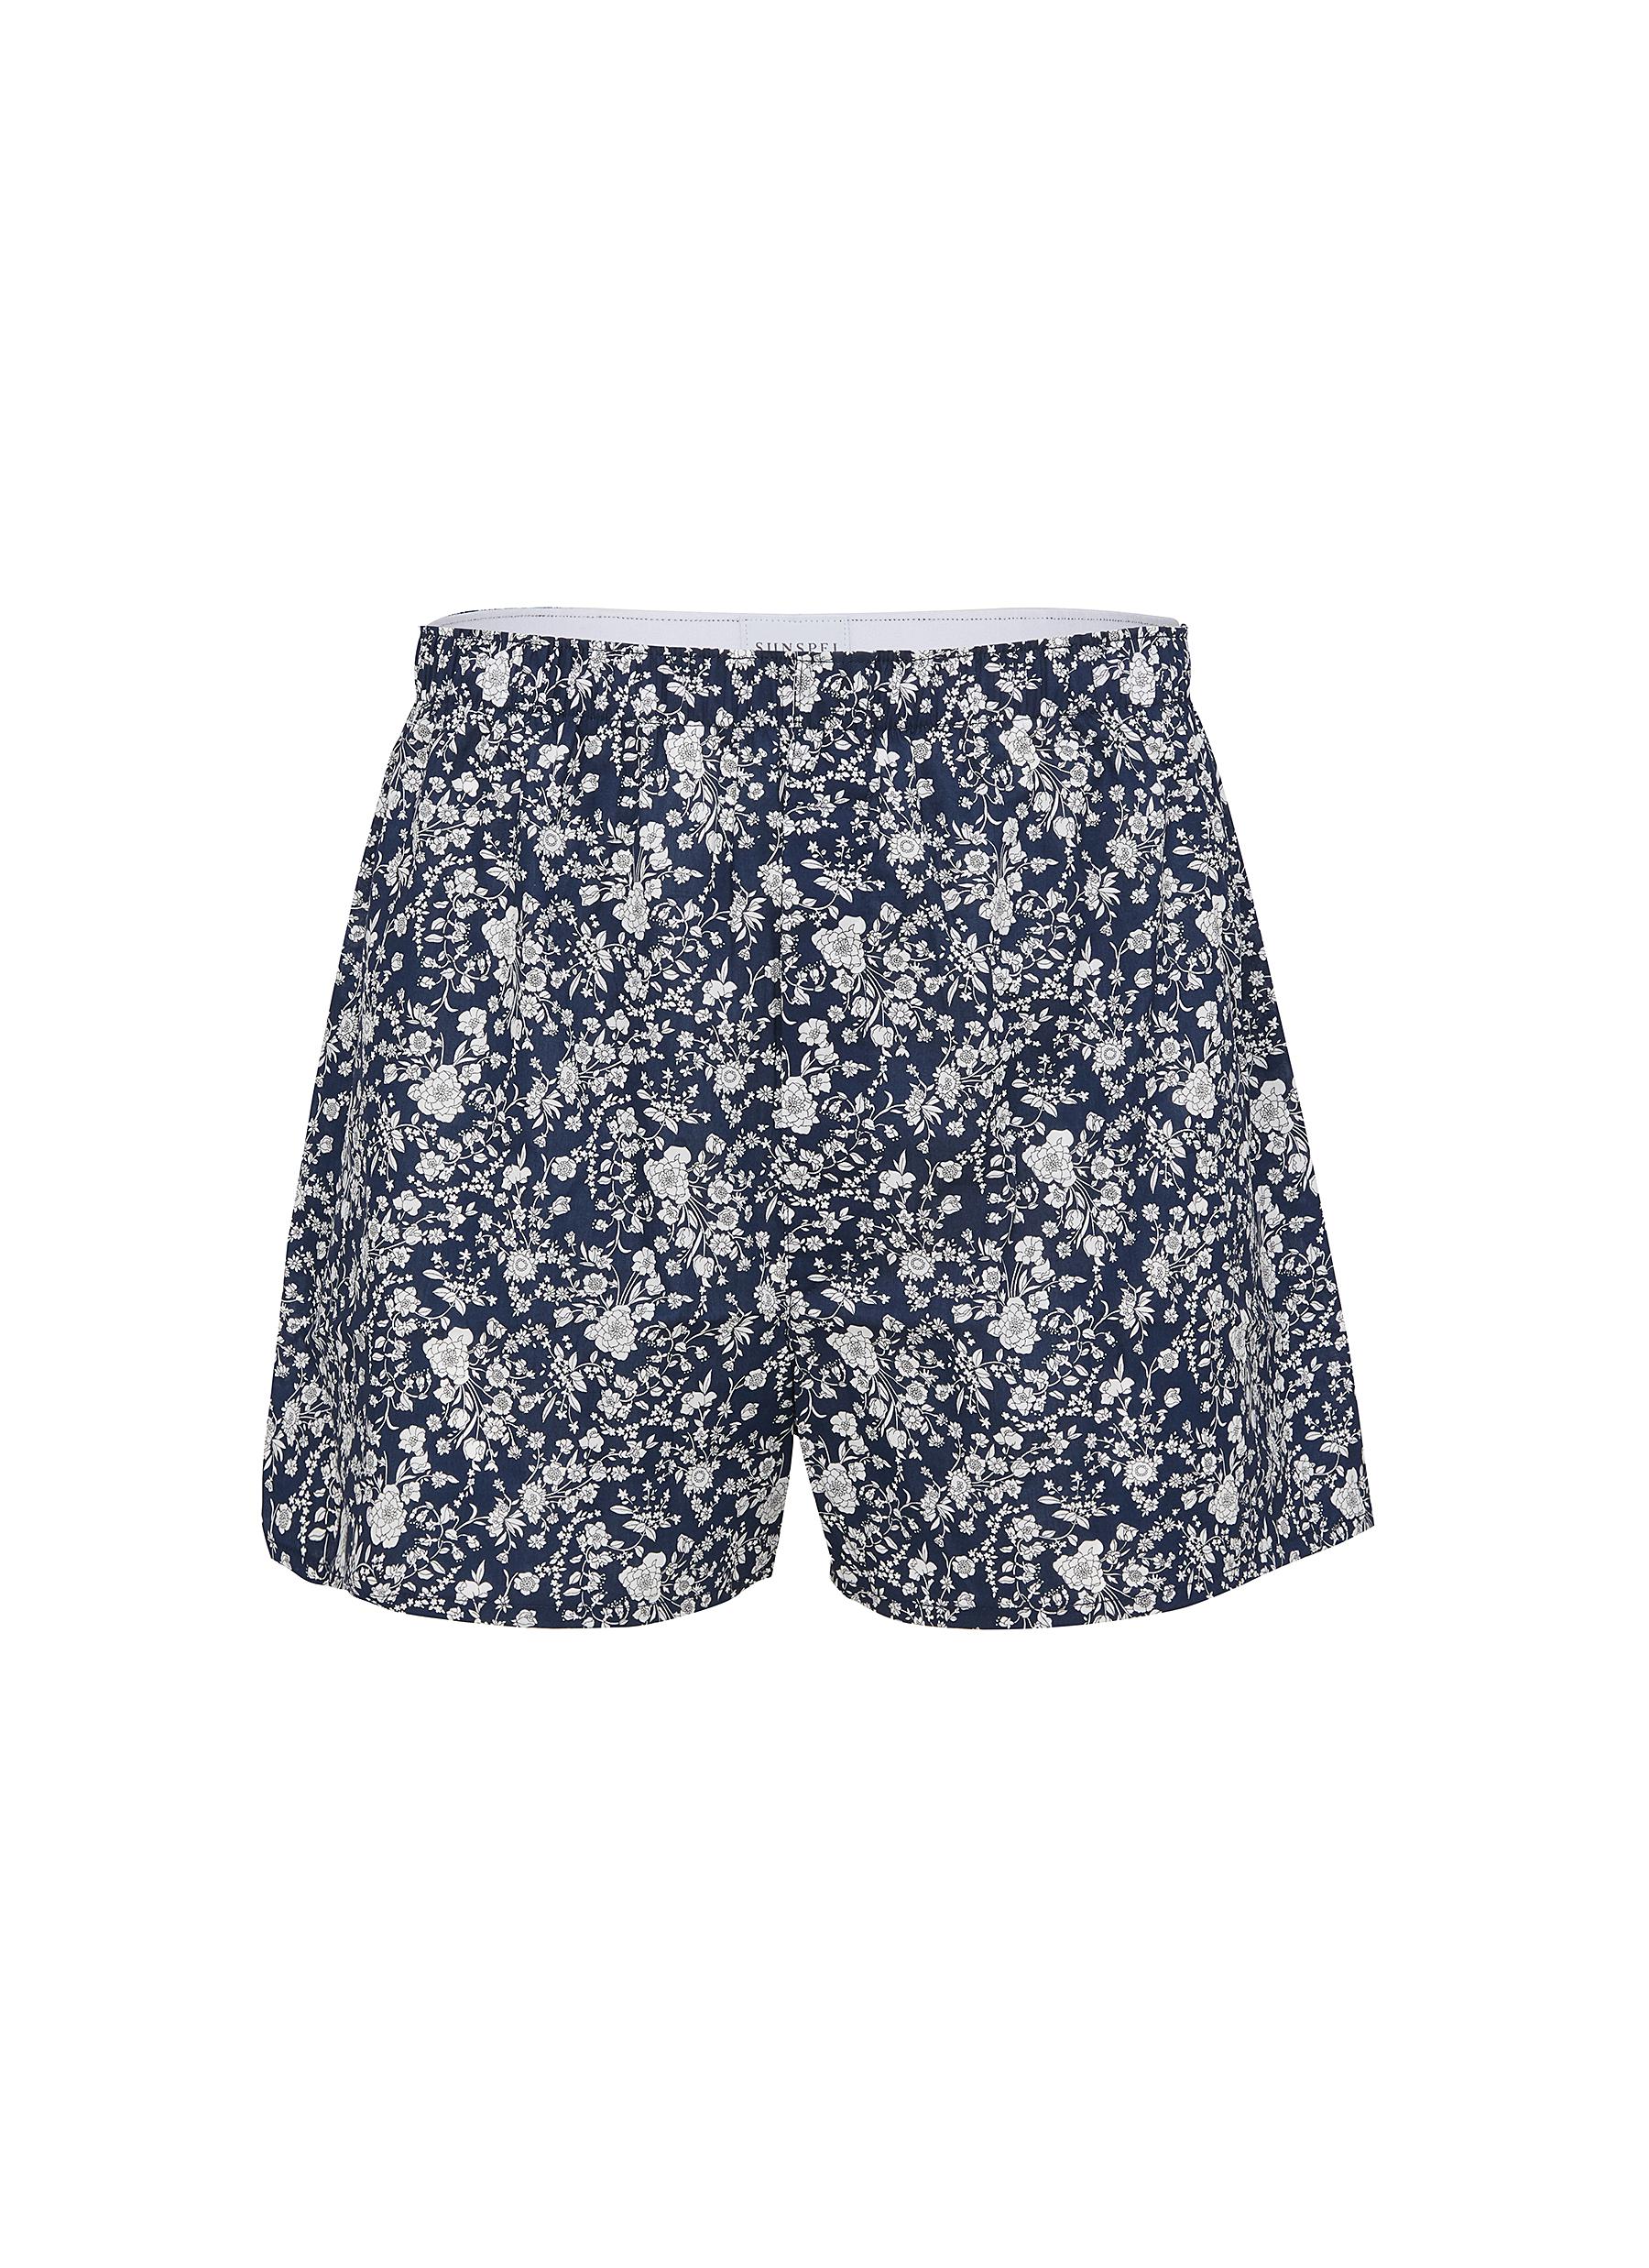 SUNSPEL, Bloom Cotton Boxer Shorts, Men